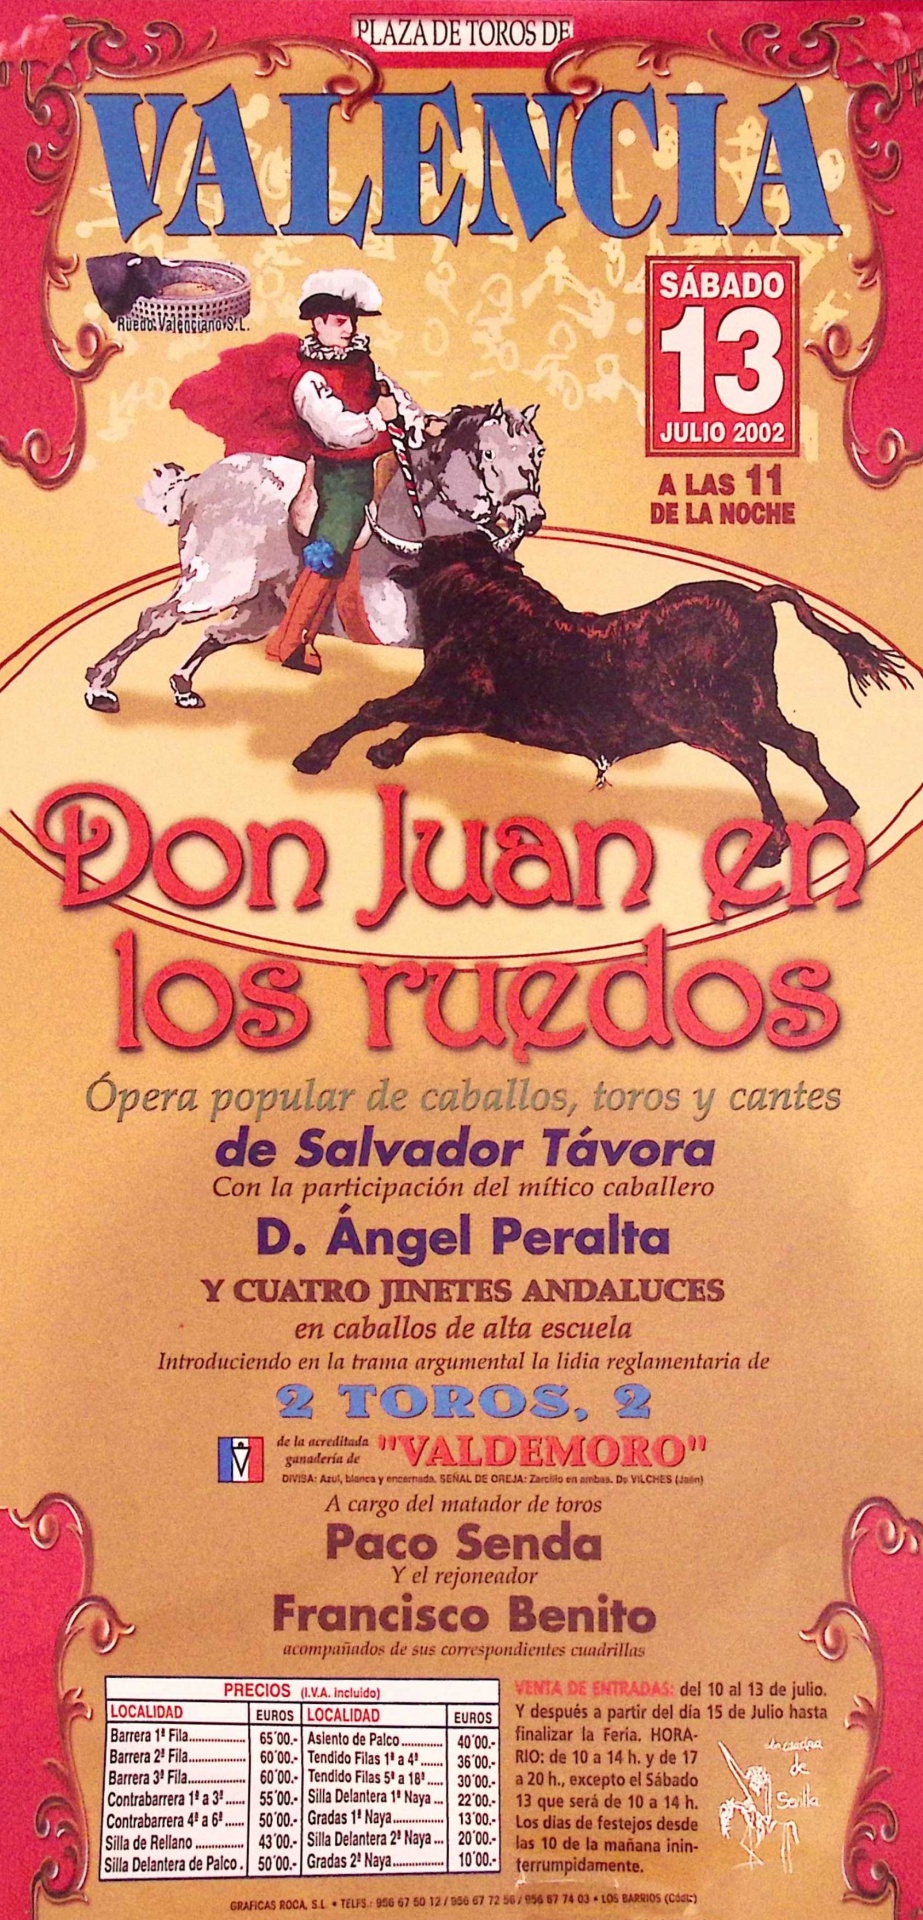 Don Juan en los ruedos. Ópera popular de caballos, toros y cantes de Salvador Távora